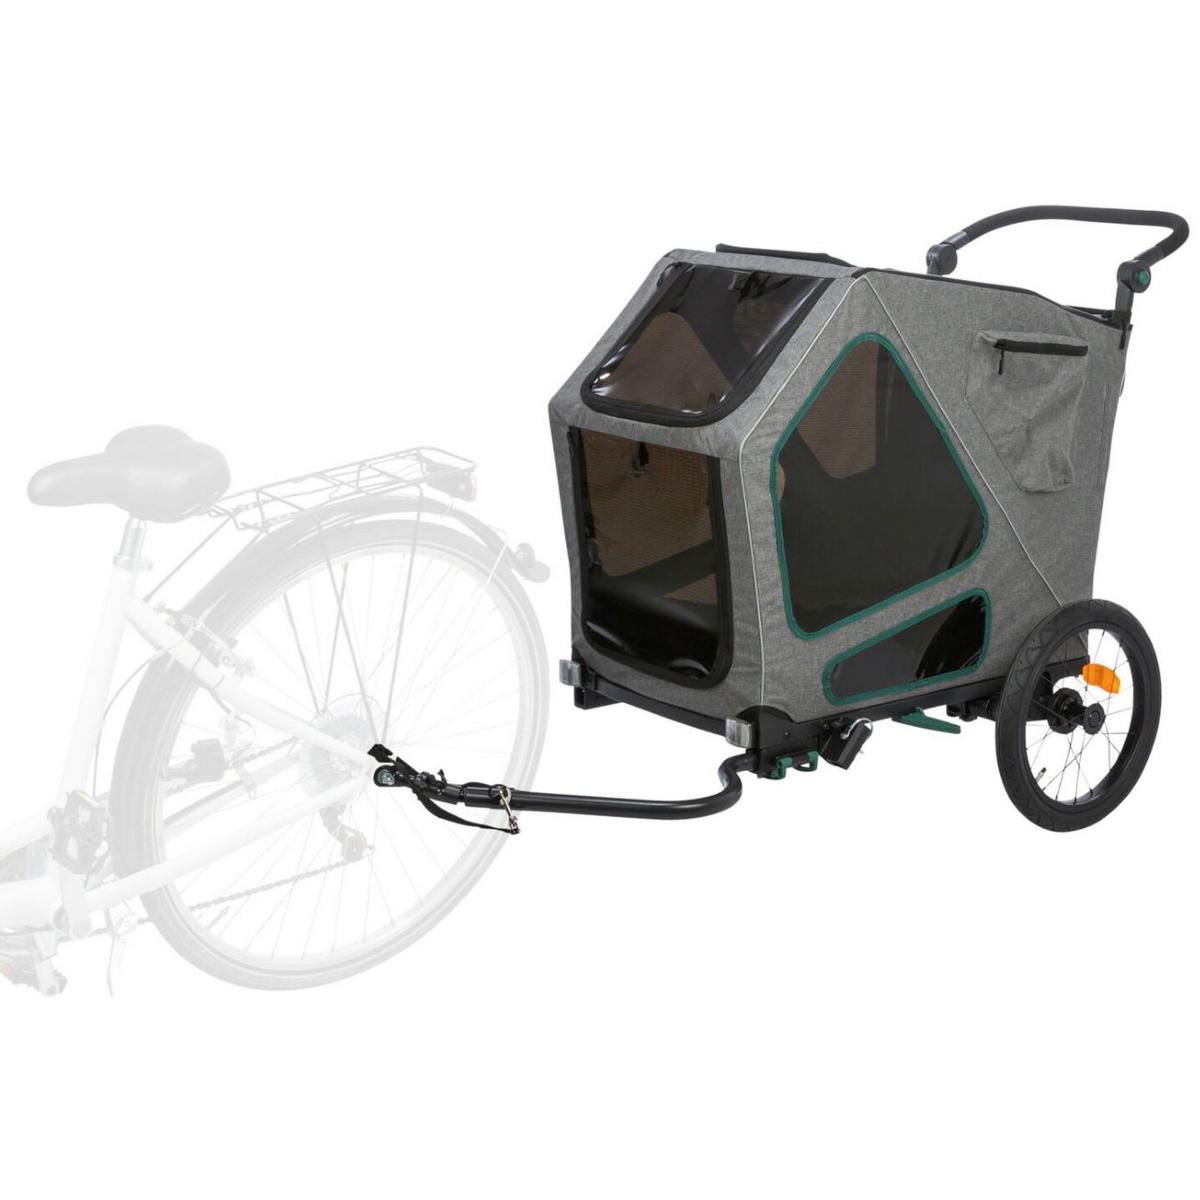 Remorque vélo chien - 20 kg - Réflecteurs - Bâche